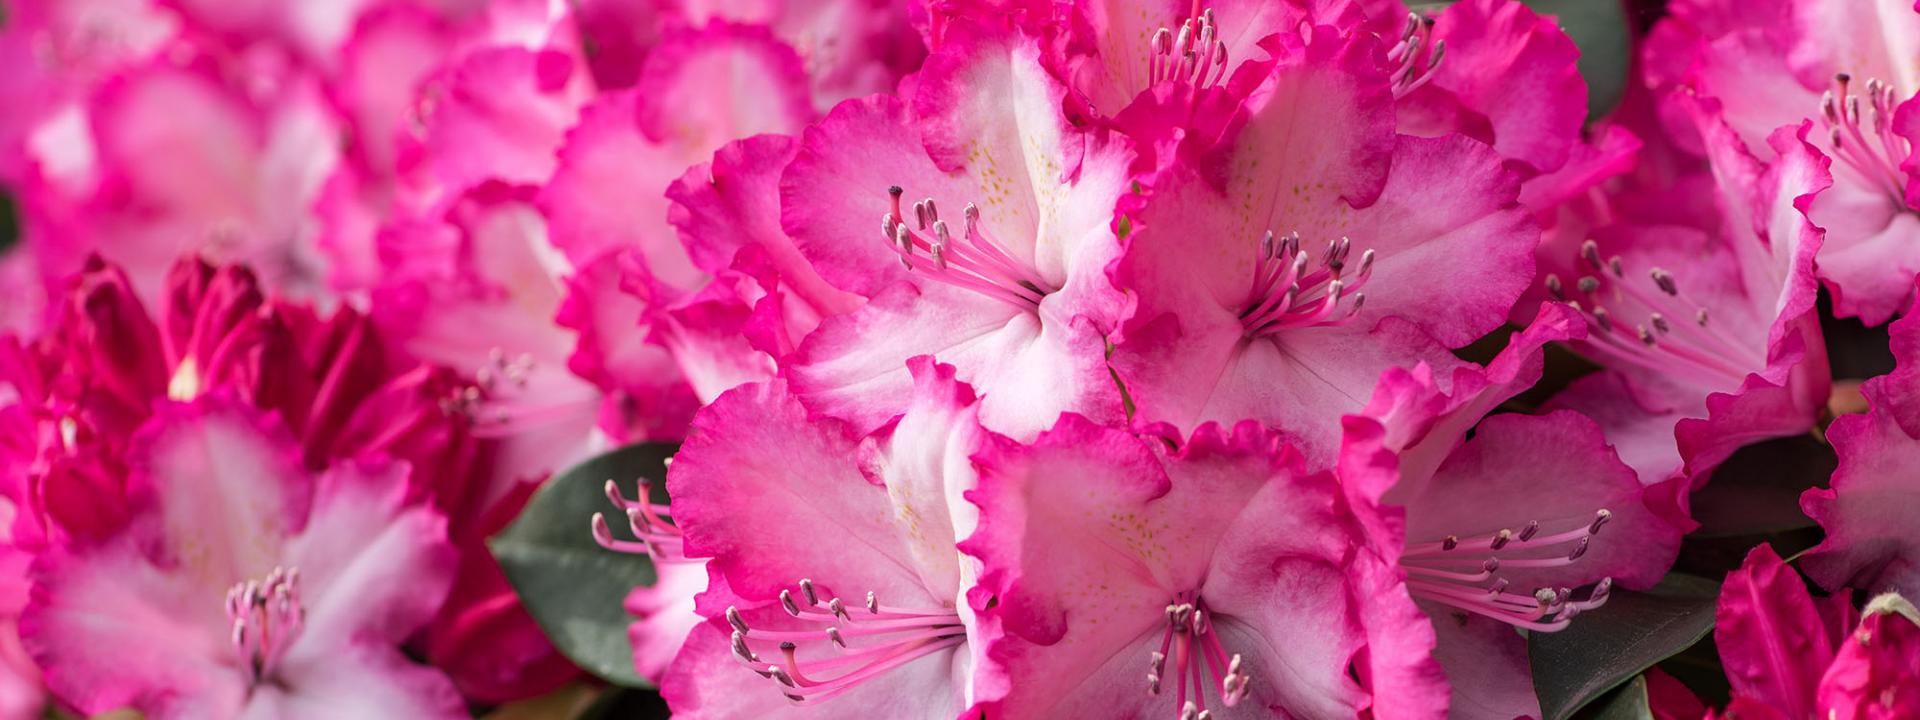 Wann ist die Blütezeit von Rhododendren und wie lange dauert sie?